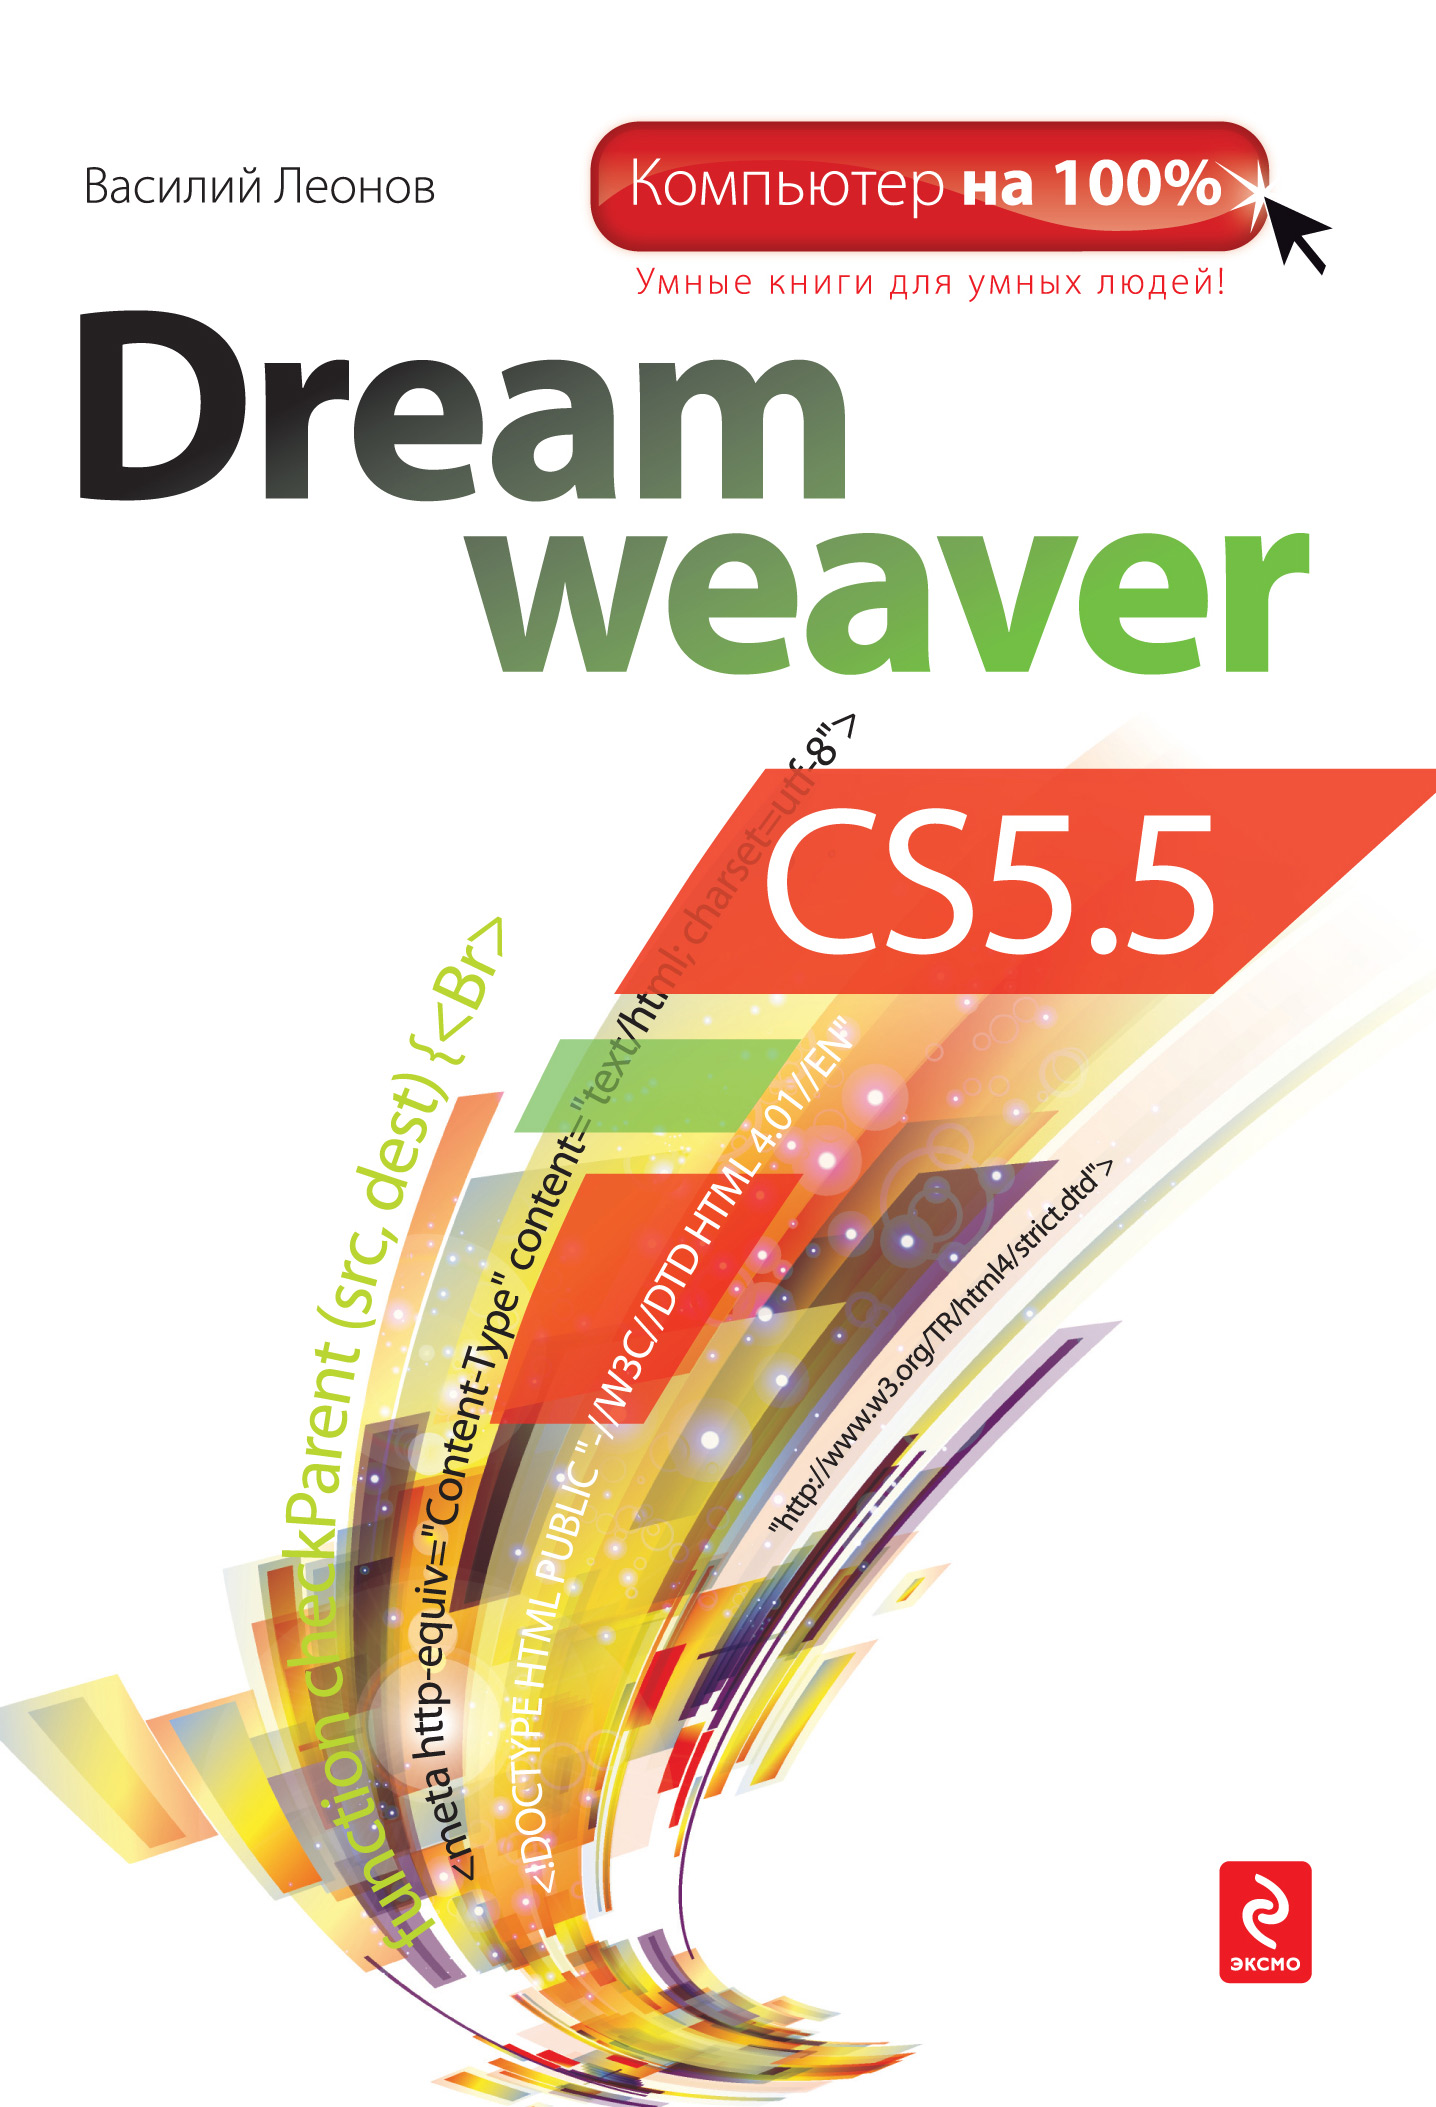 Книга Компьютер на 100% Dreamweaver CS5.5 созданная Василий Леонов может относится к жанру интернет, программы. Стоимость электронной книги Dreamweaver CS5.5 с идентификатором 3140455 составляет 199.00 руб.